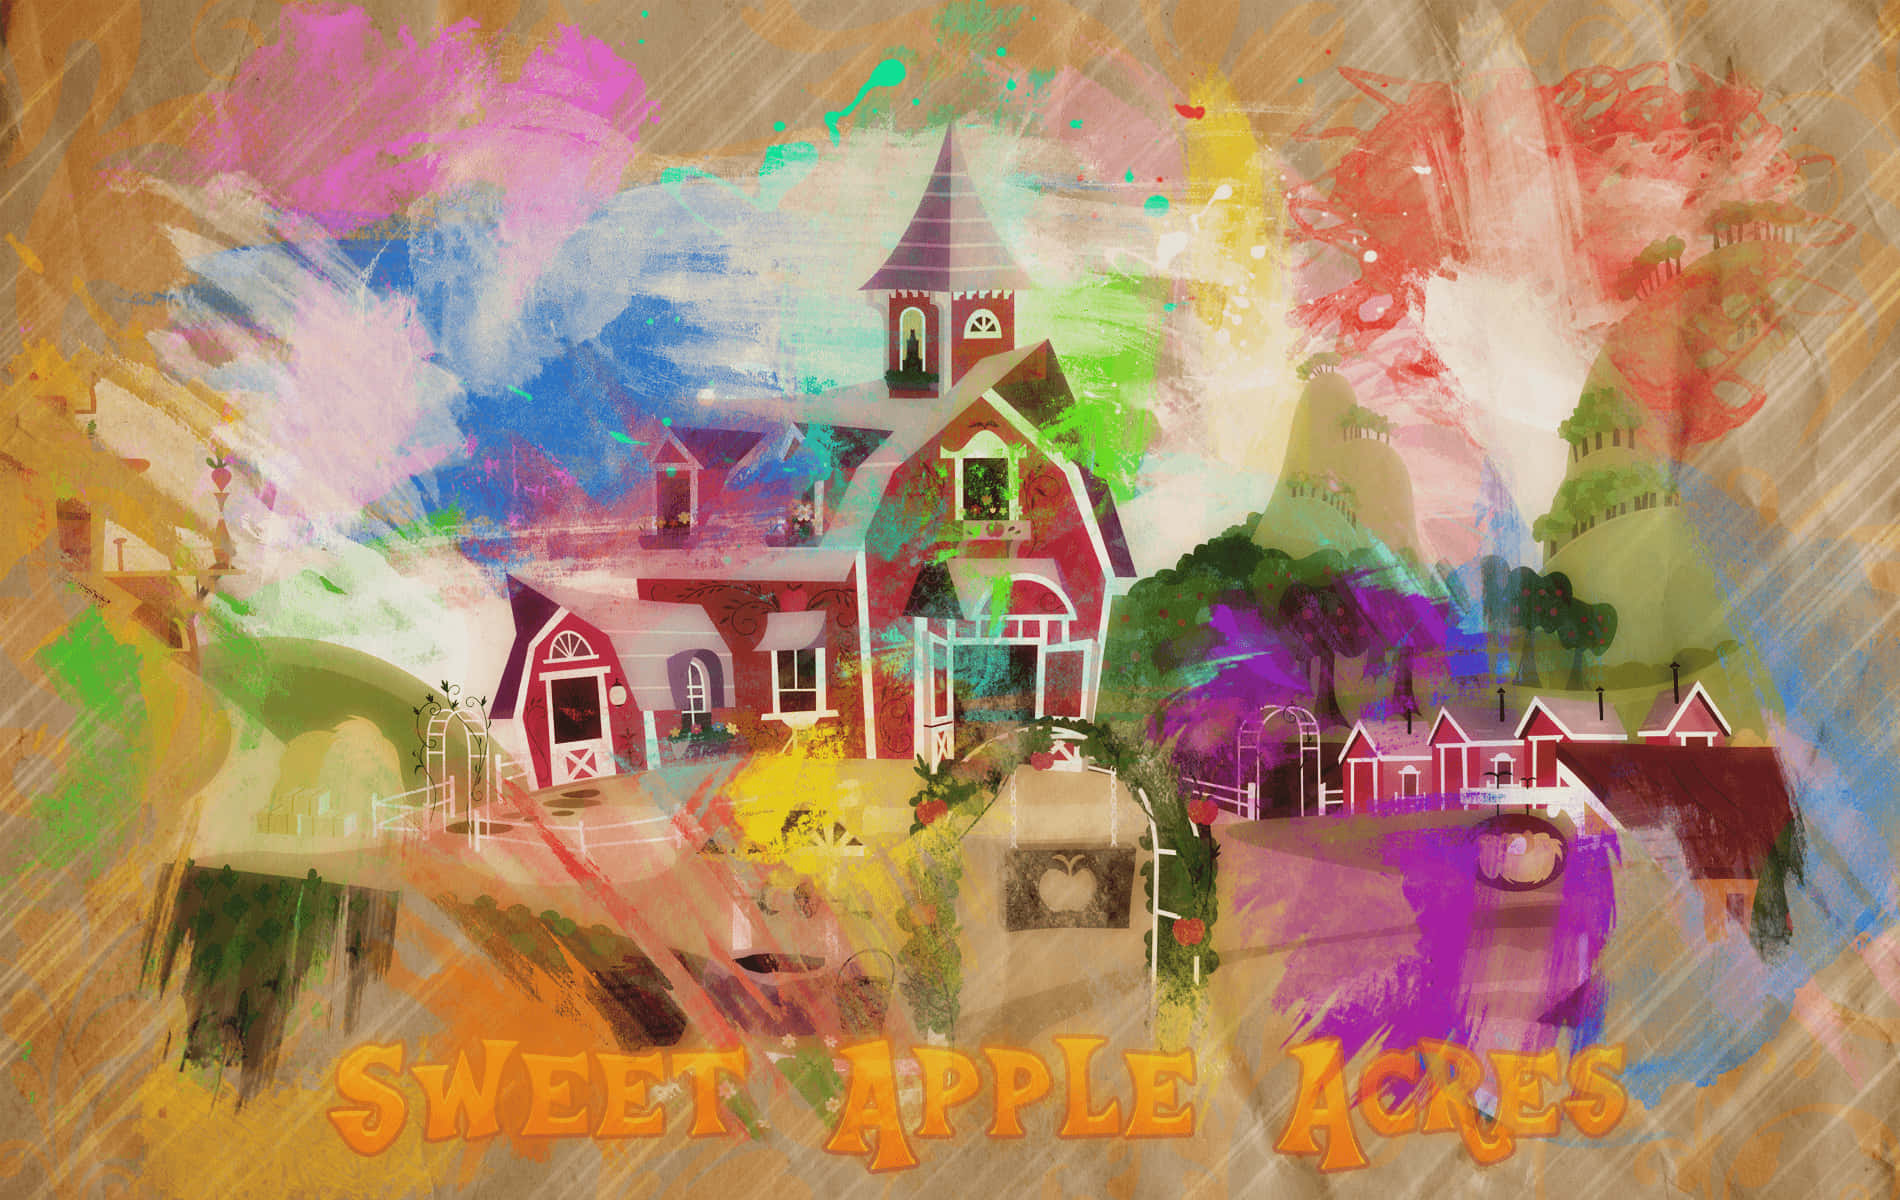 Fondode Pantalla De Pintura De Sweet Apple Acres.